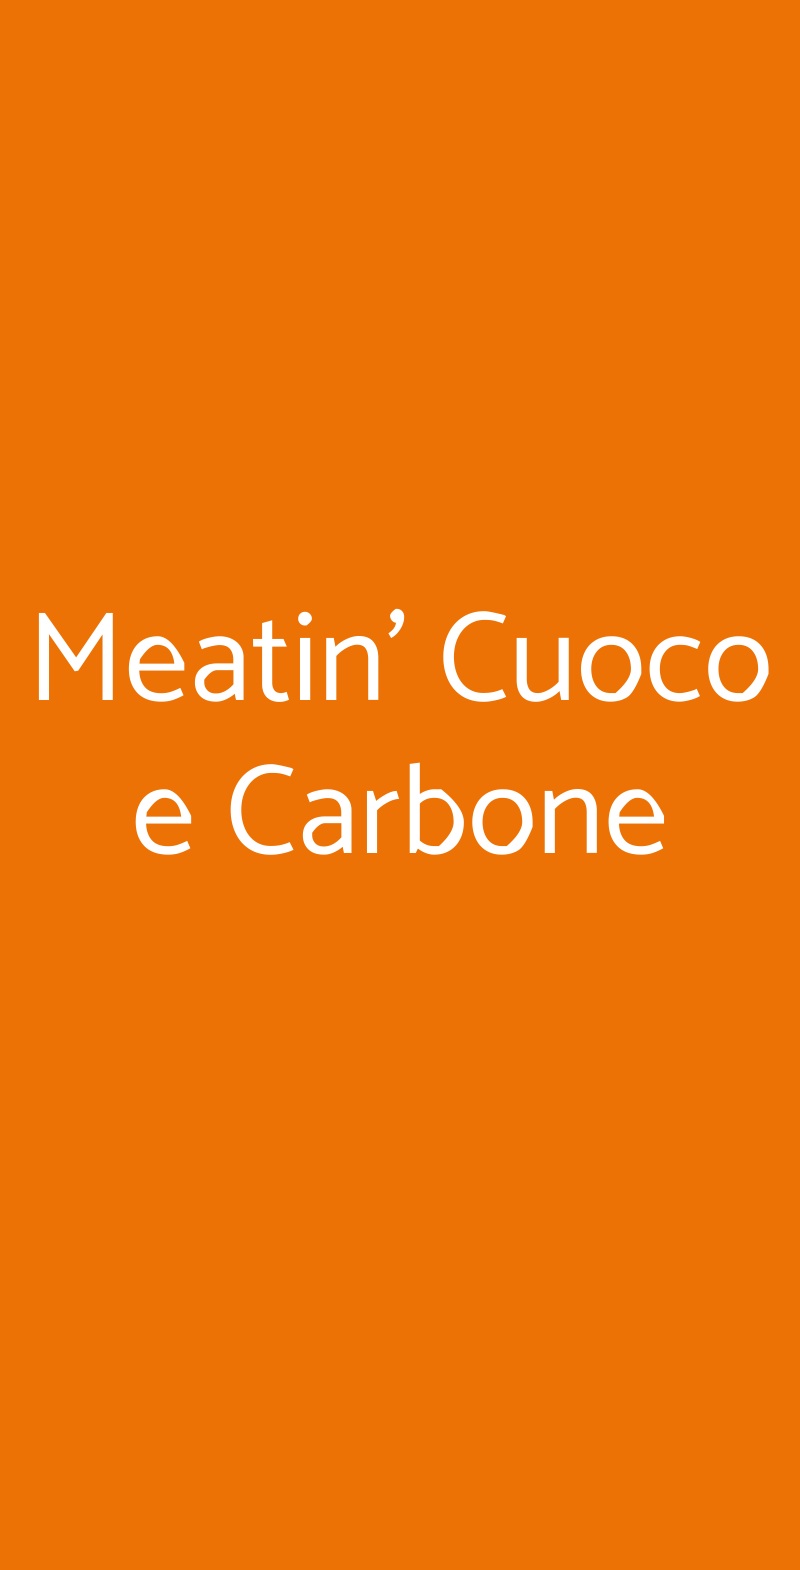 Meatin' Cuoco e Carbone Napoli menù 1 pagina